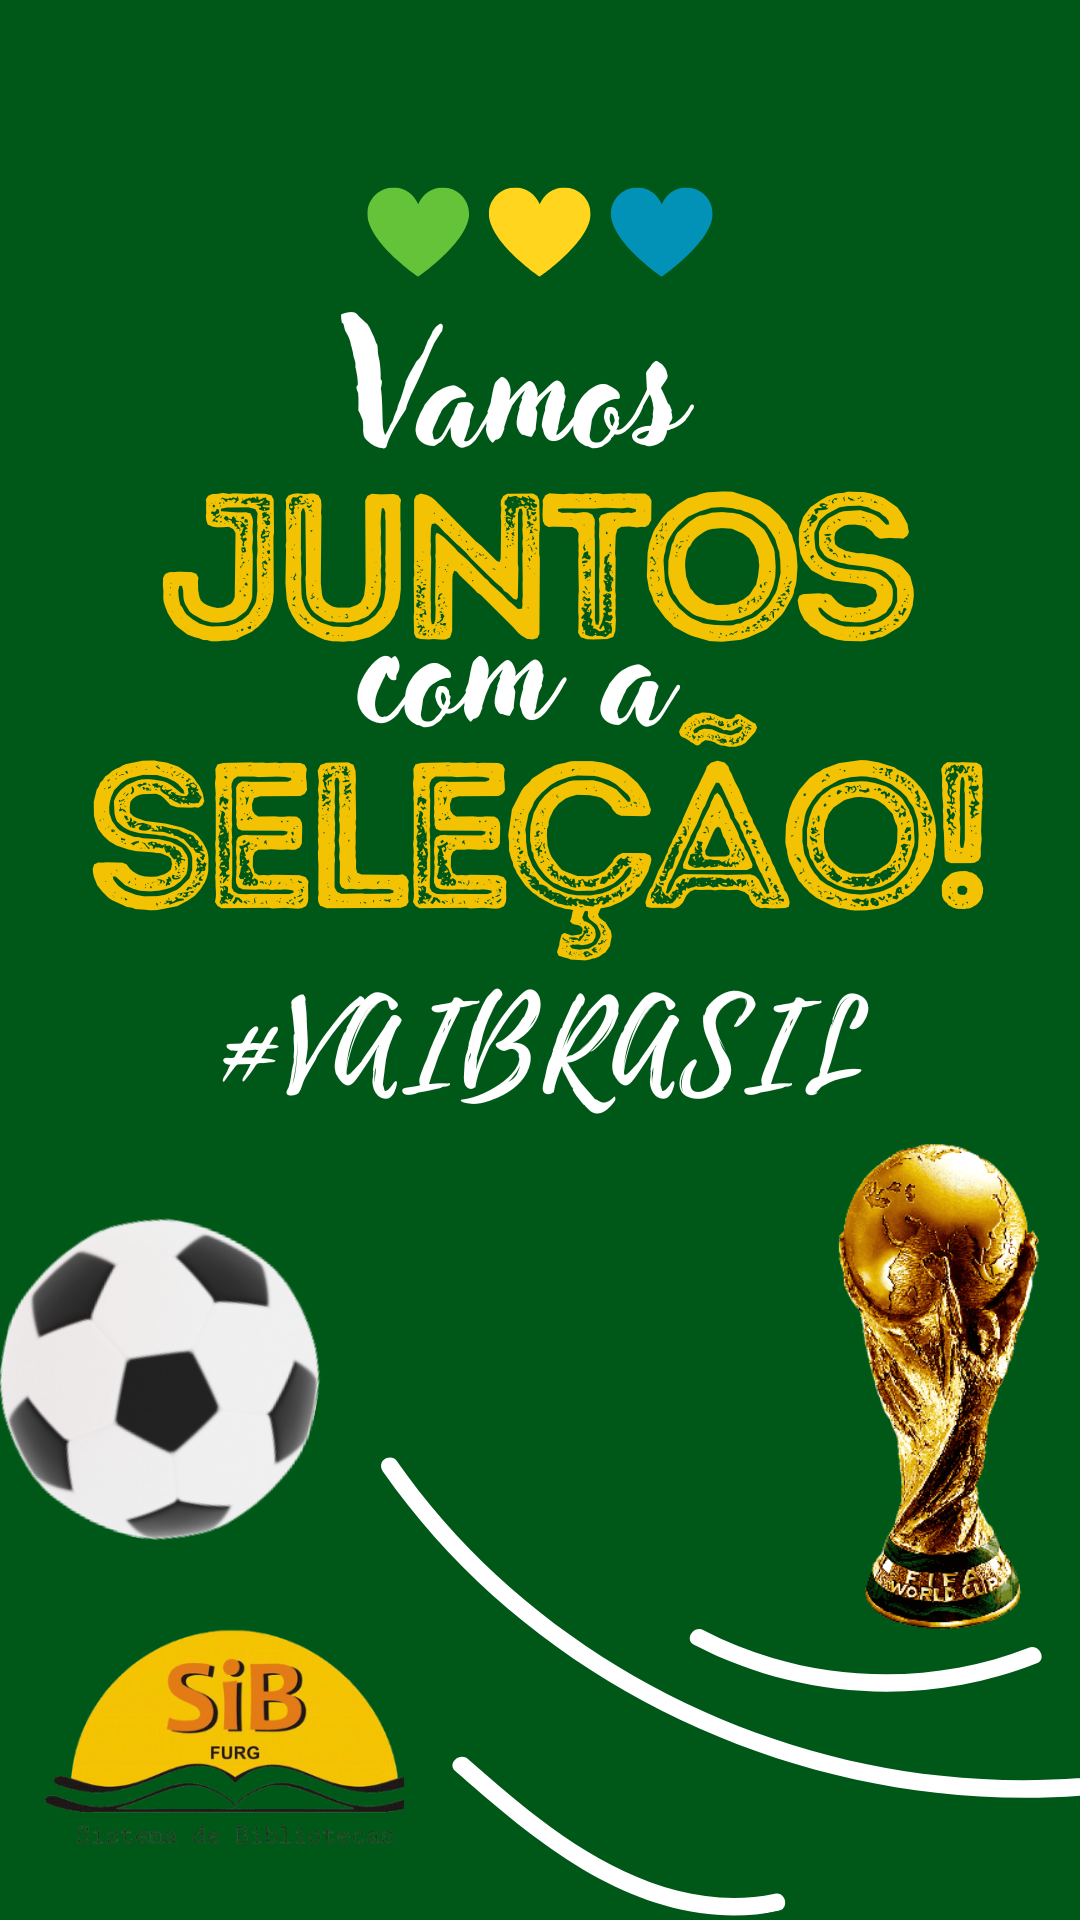 Imagem de fundo verde escuro escrito Vamos junto com a seleção, Vai Brasil, imagem de uma bola e uma taça e o logo do Sib